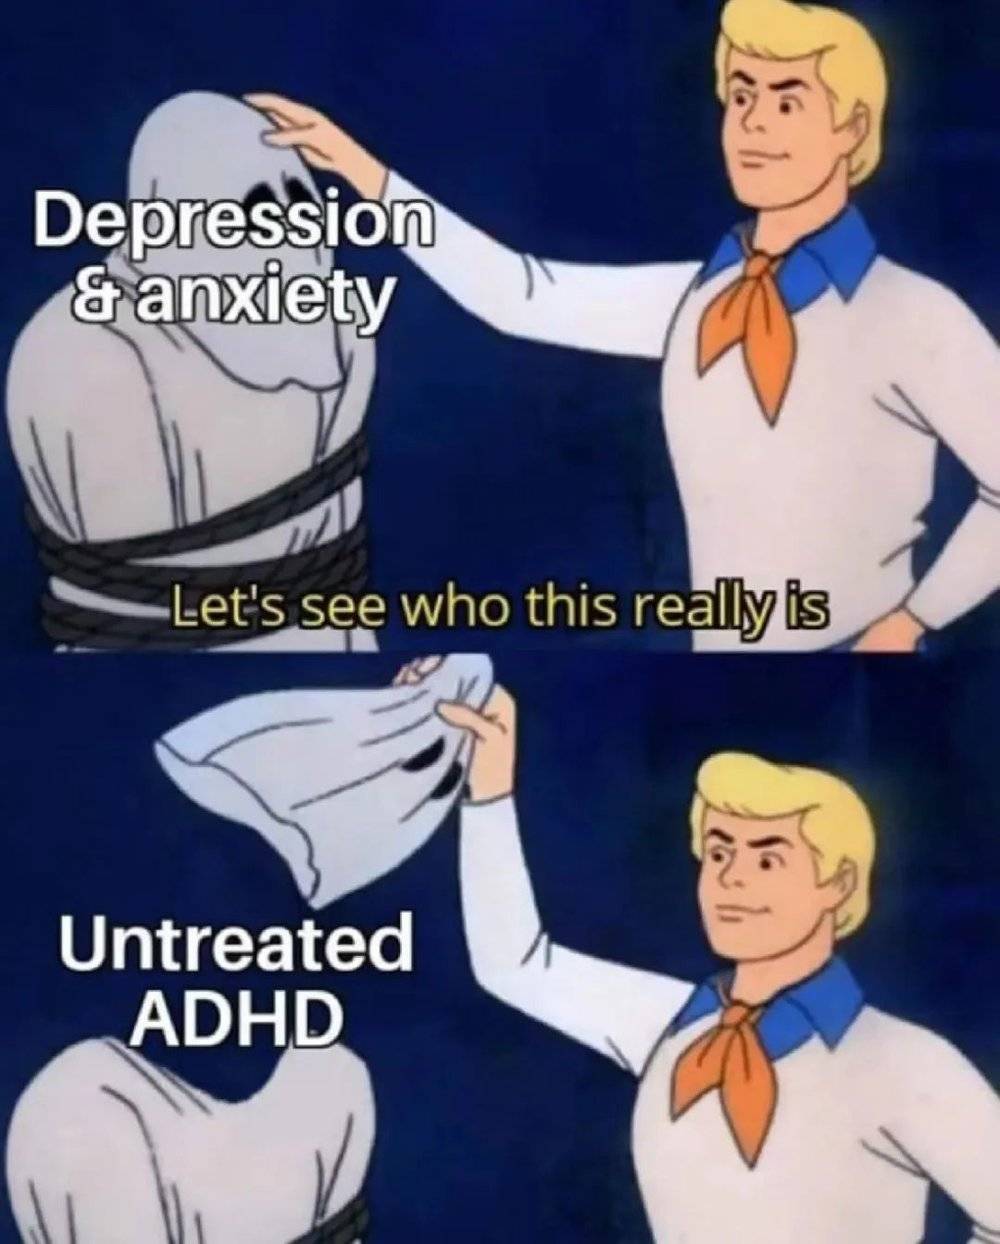 有时ADHD会藏在抑郁与焦虑的表象之下，容易被误诊。